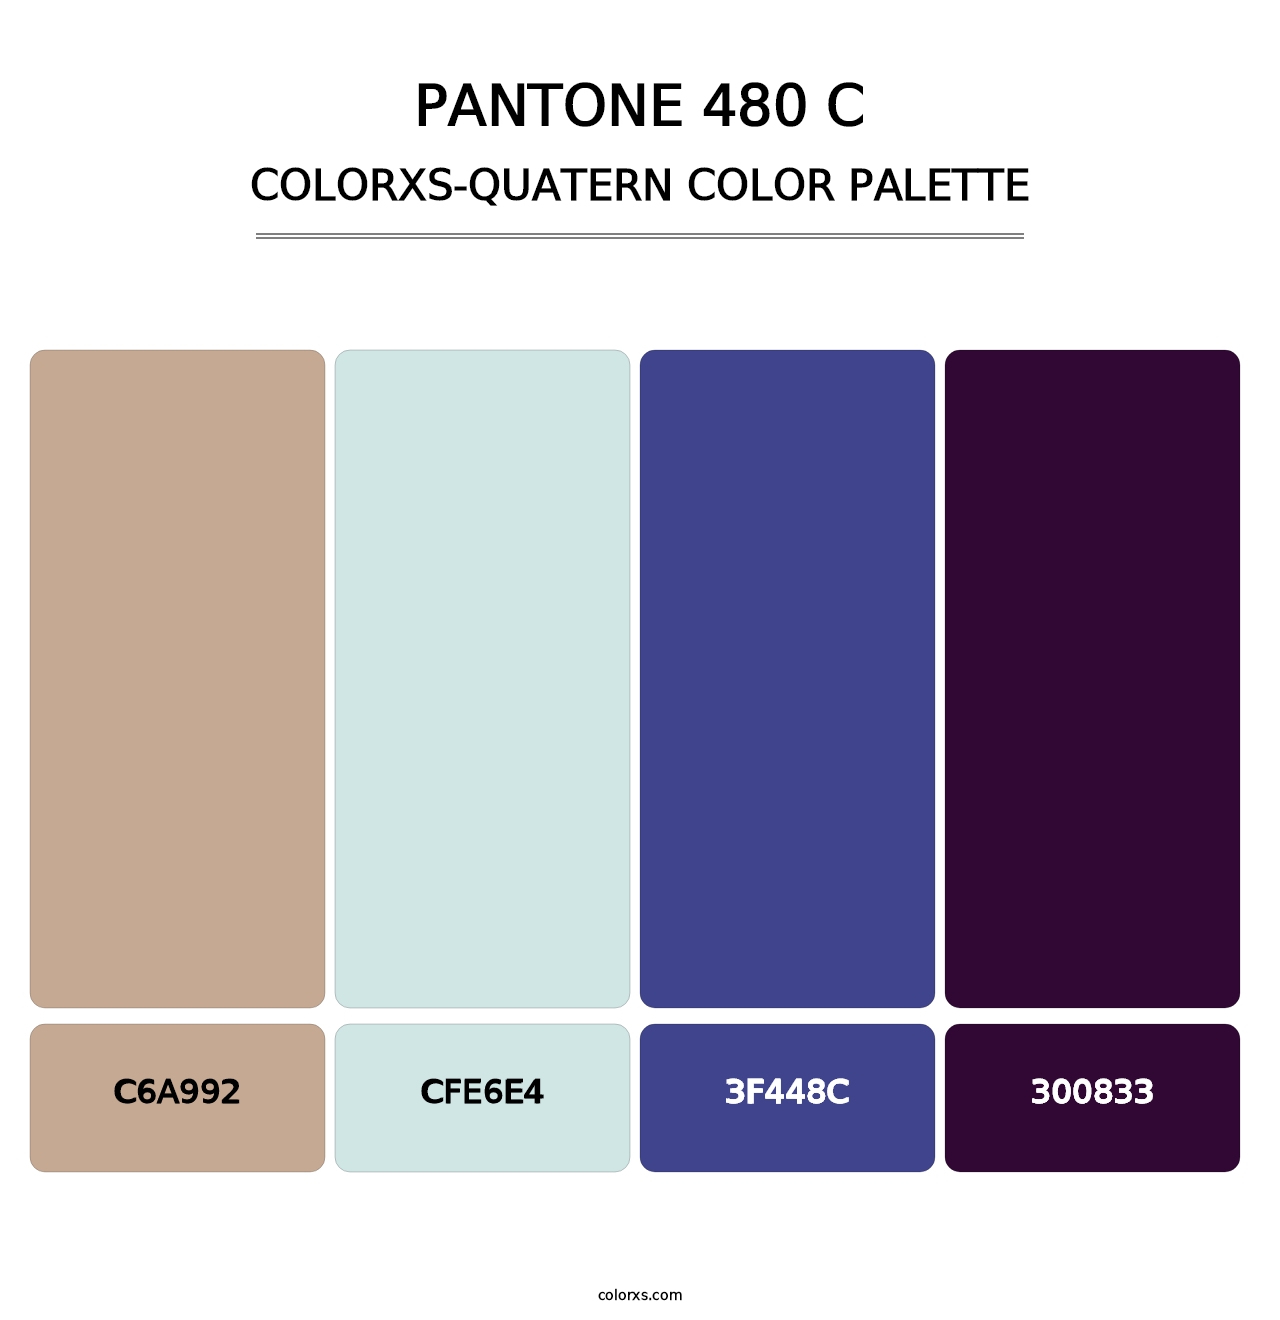 PANTONE 480 C - Colorxs Quatern Palette